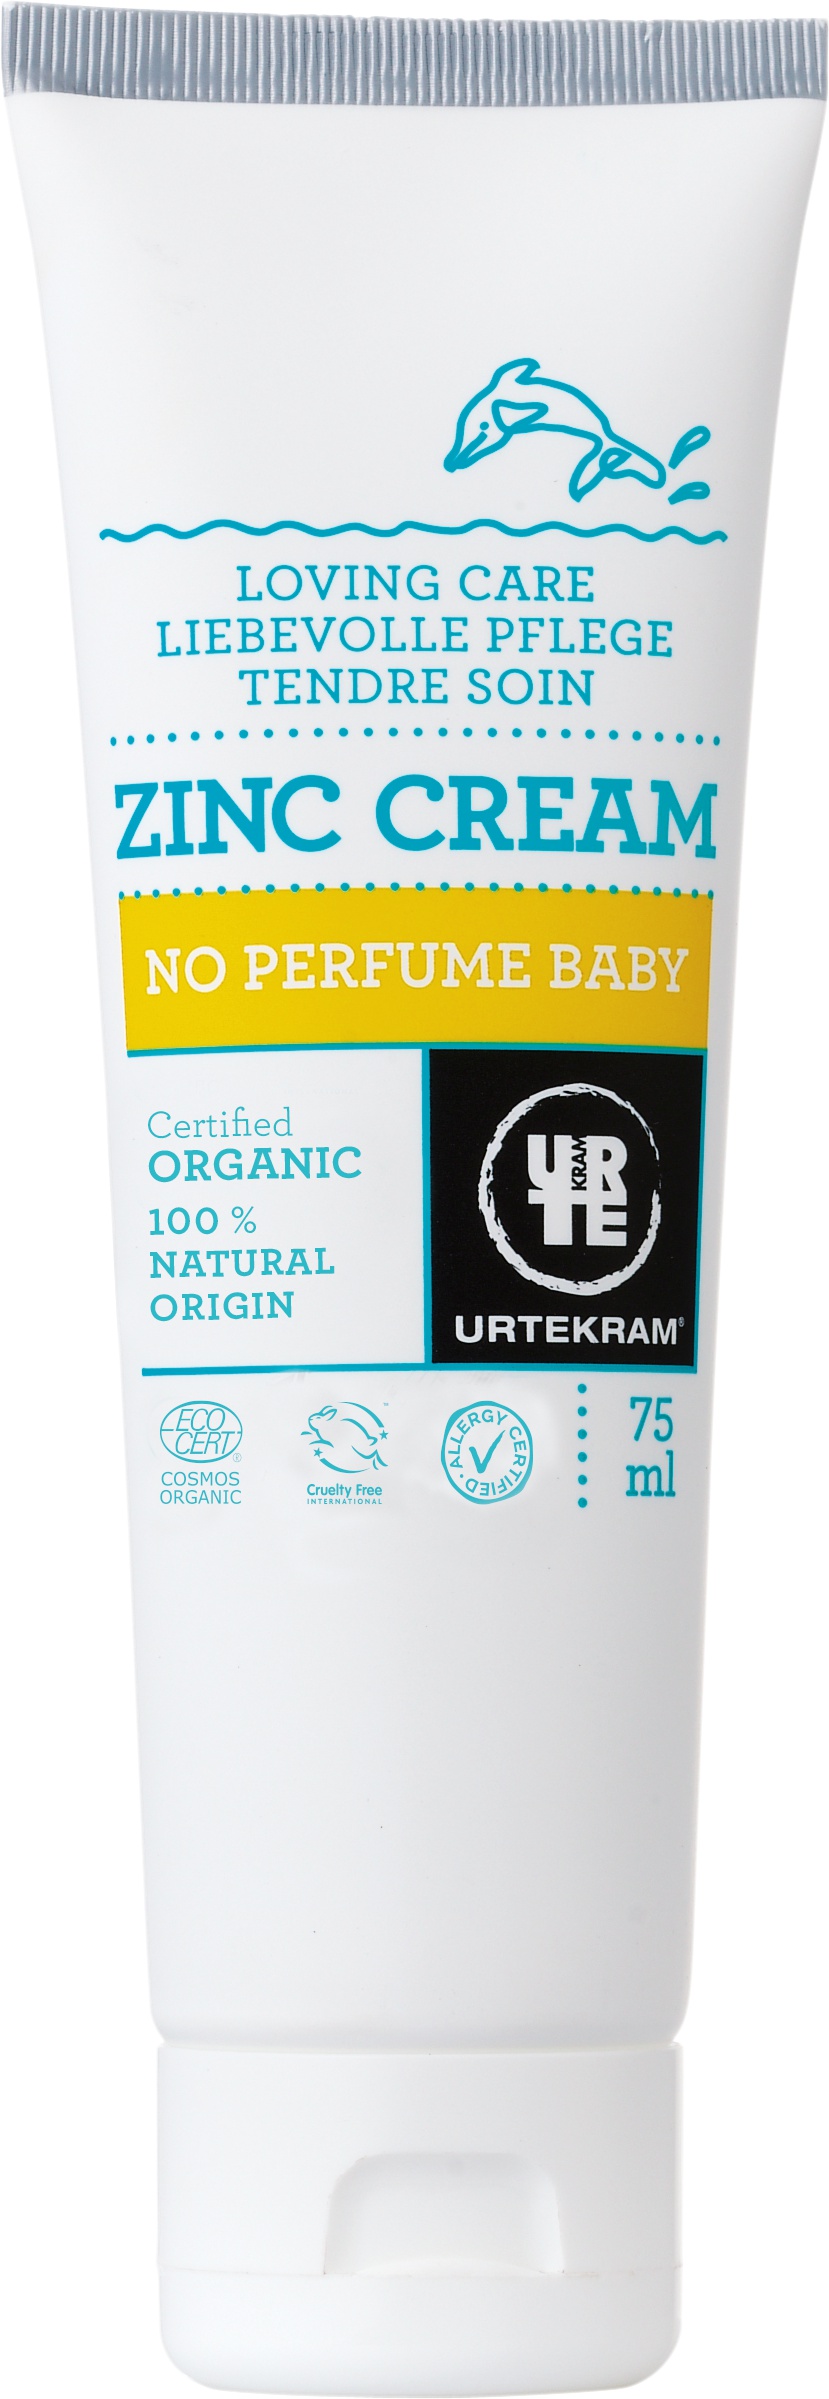 Urtekram No Perfume Baby Zinc Cream